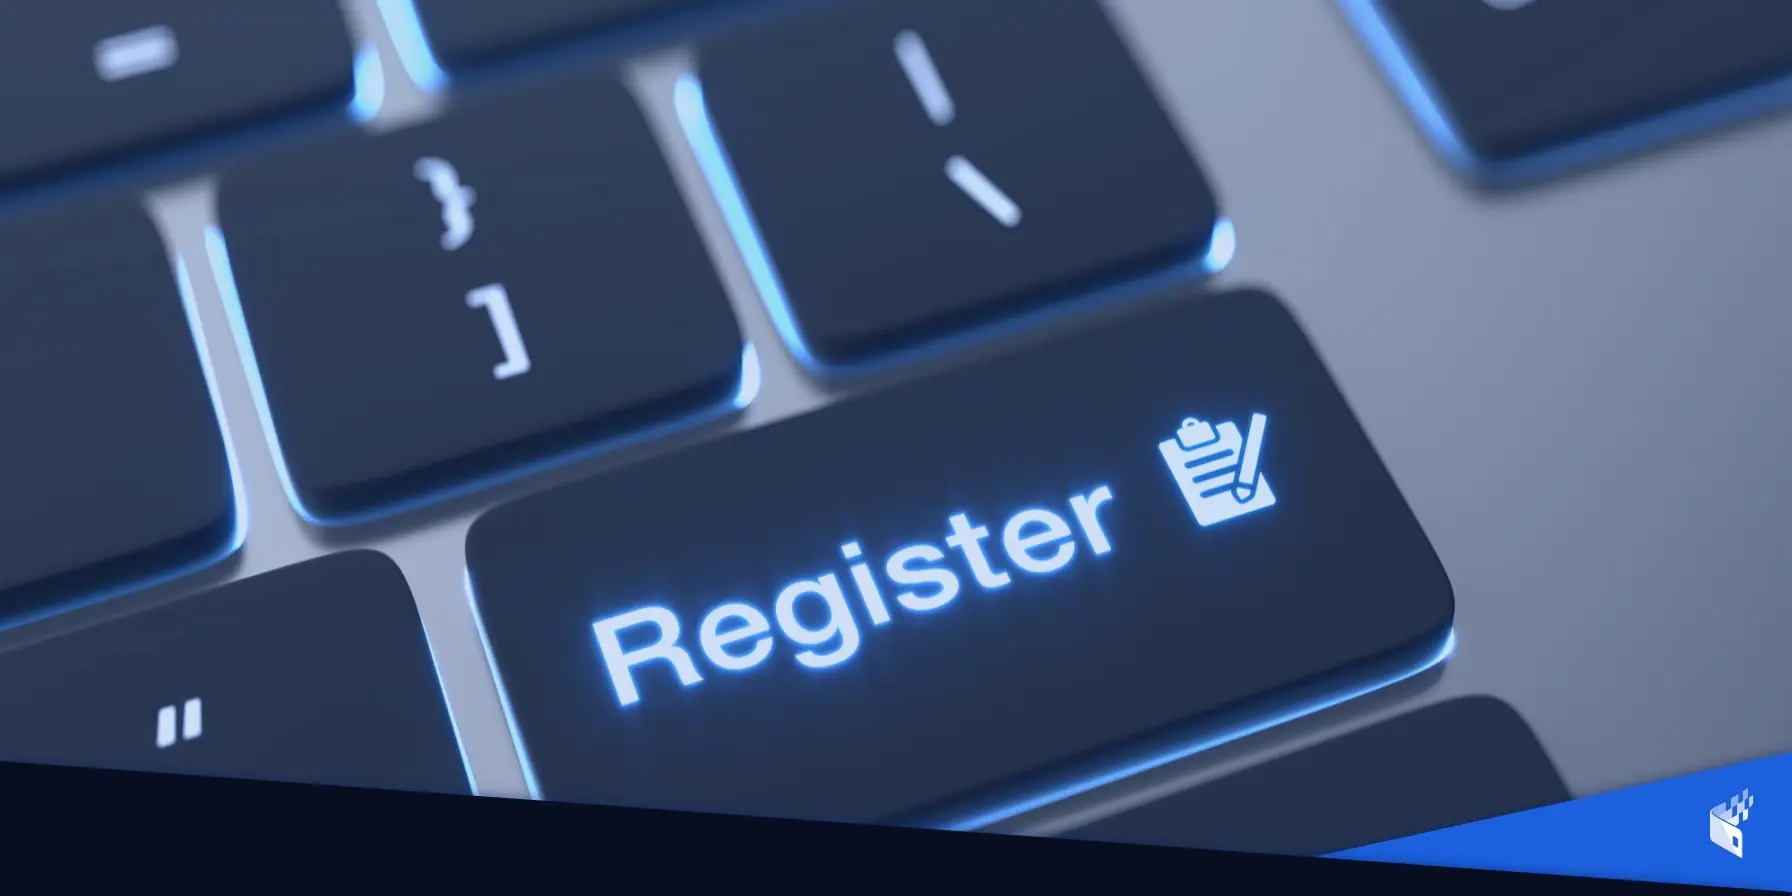 register key on keyboard